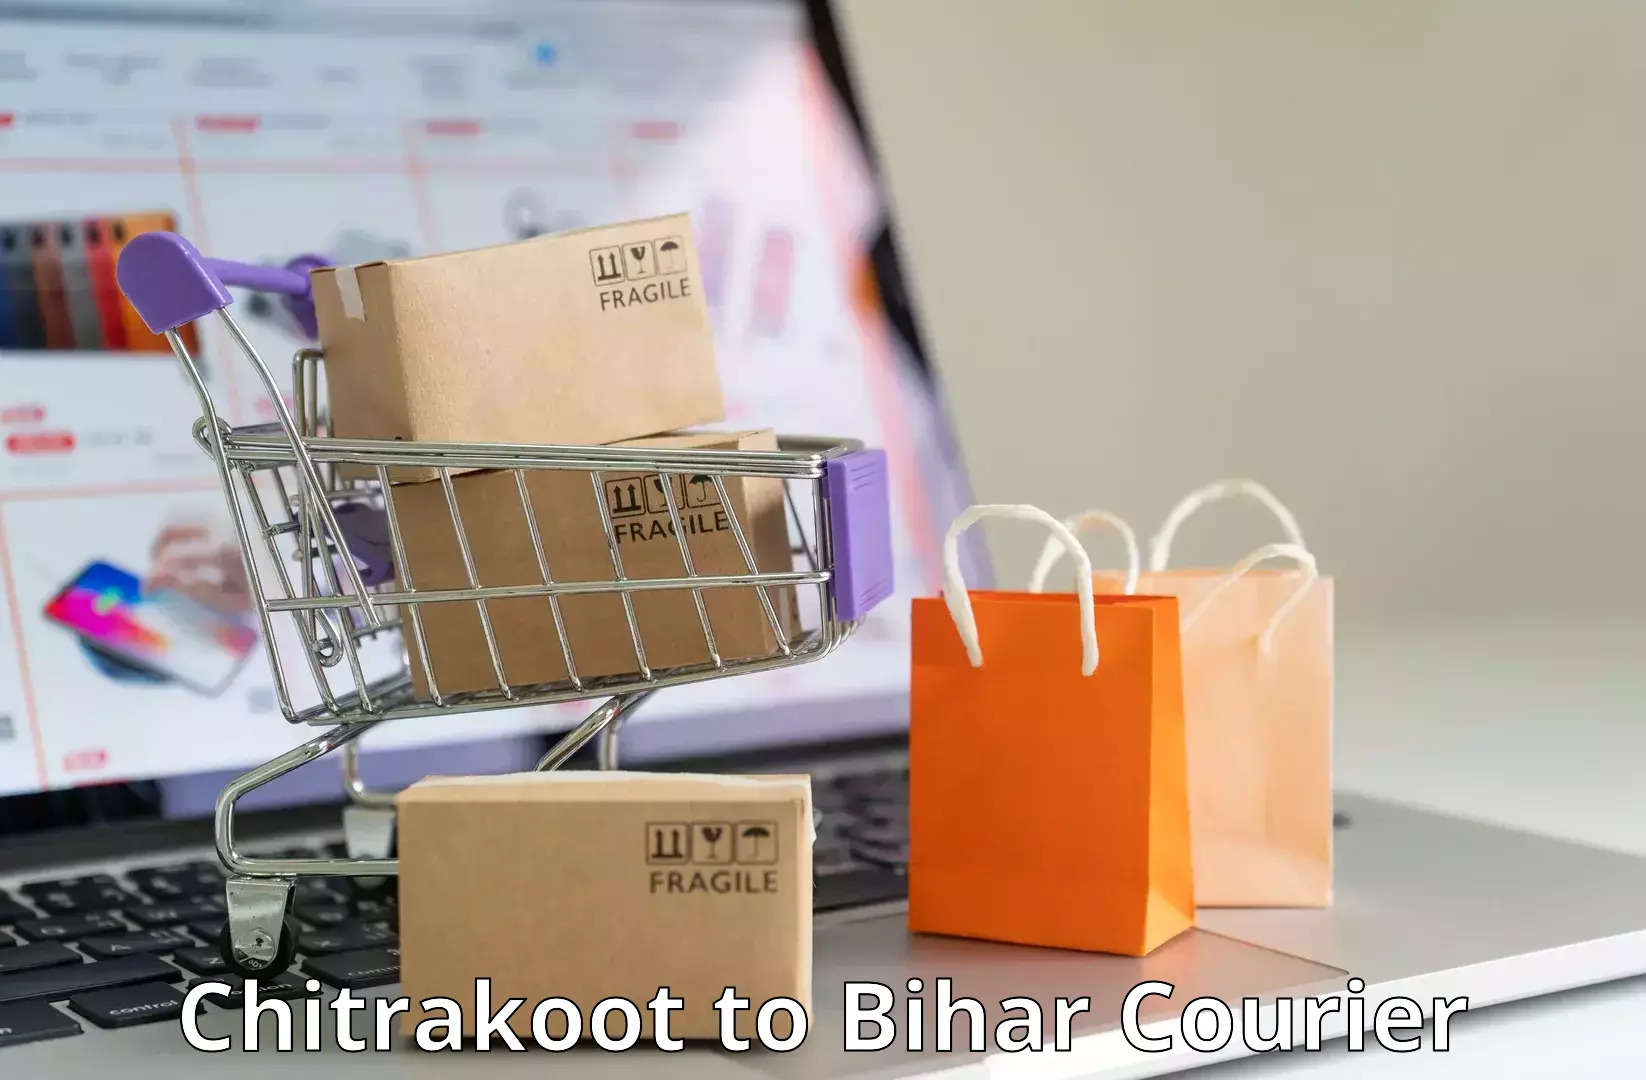 Courier service innovation Chitrakoot to Khagaria